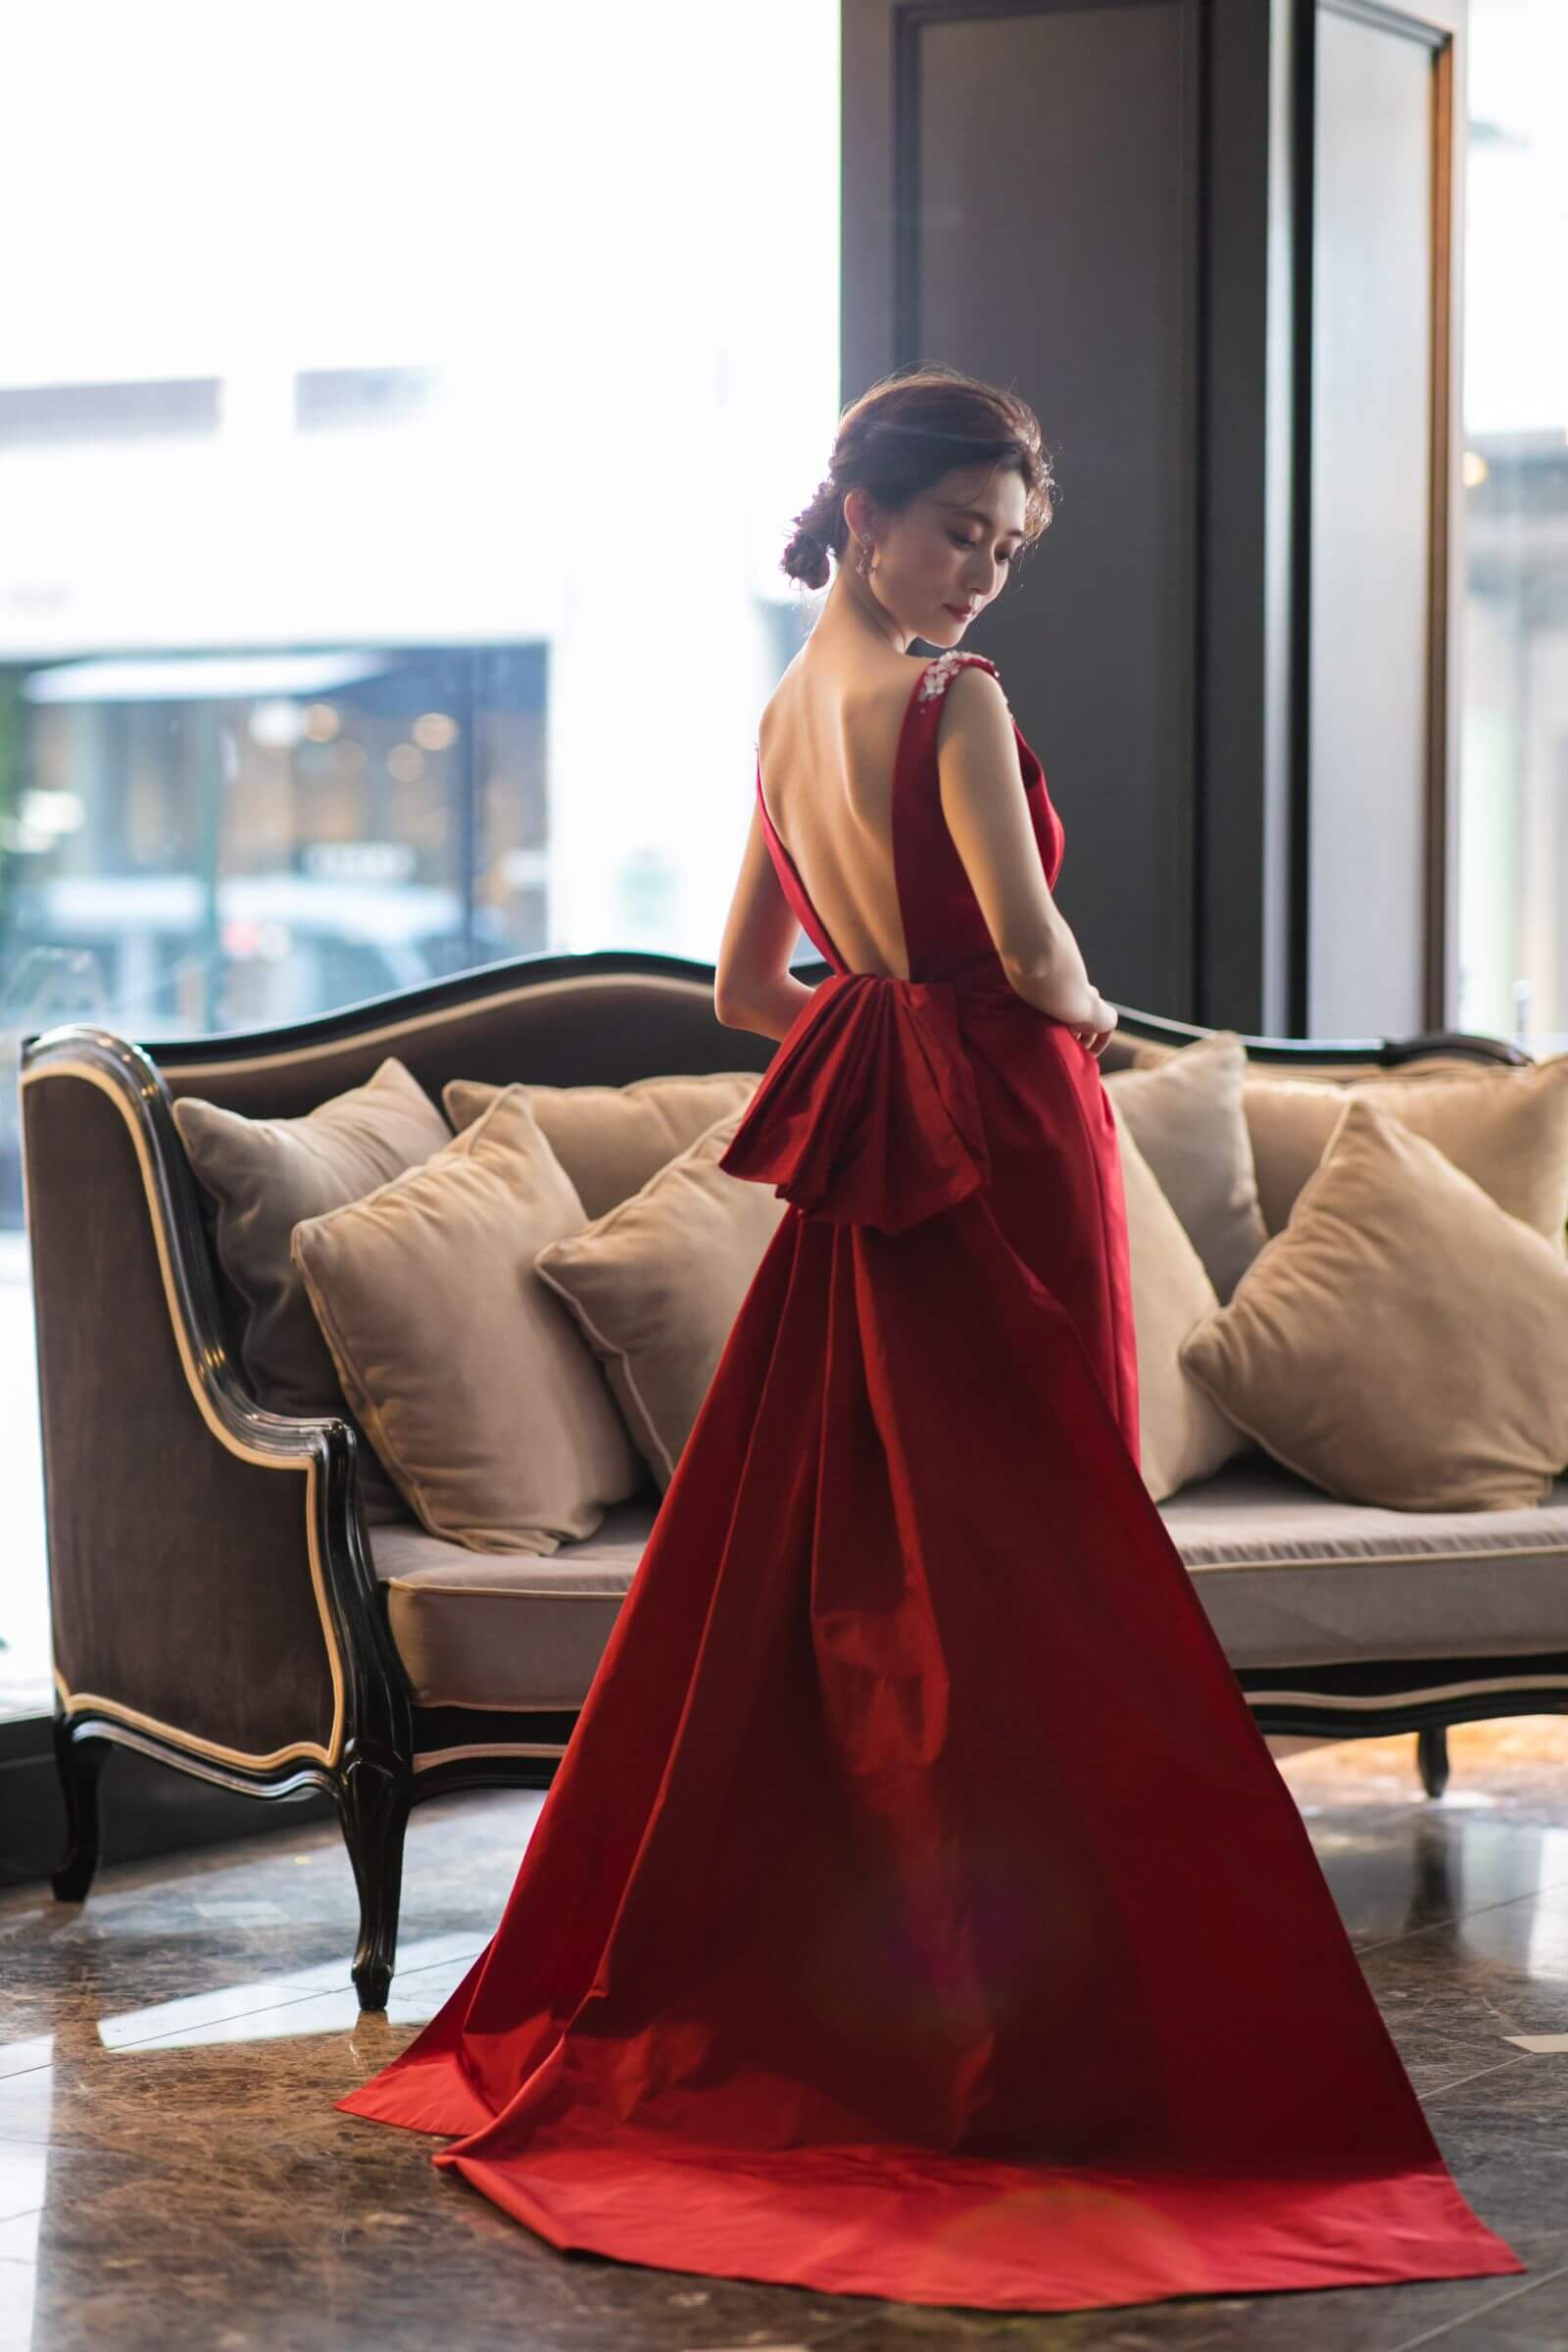 JUNO(ジュノ)オリジナルカラードレス“Henri” 艶やかな赤いドレスを 